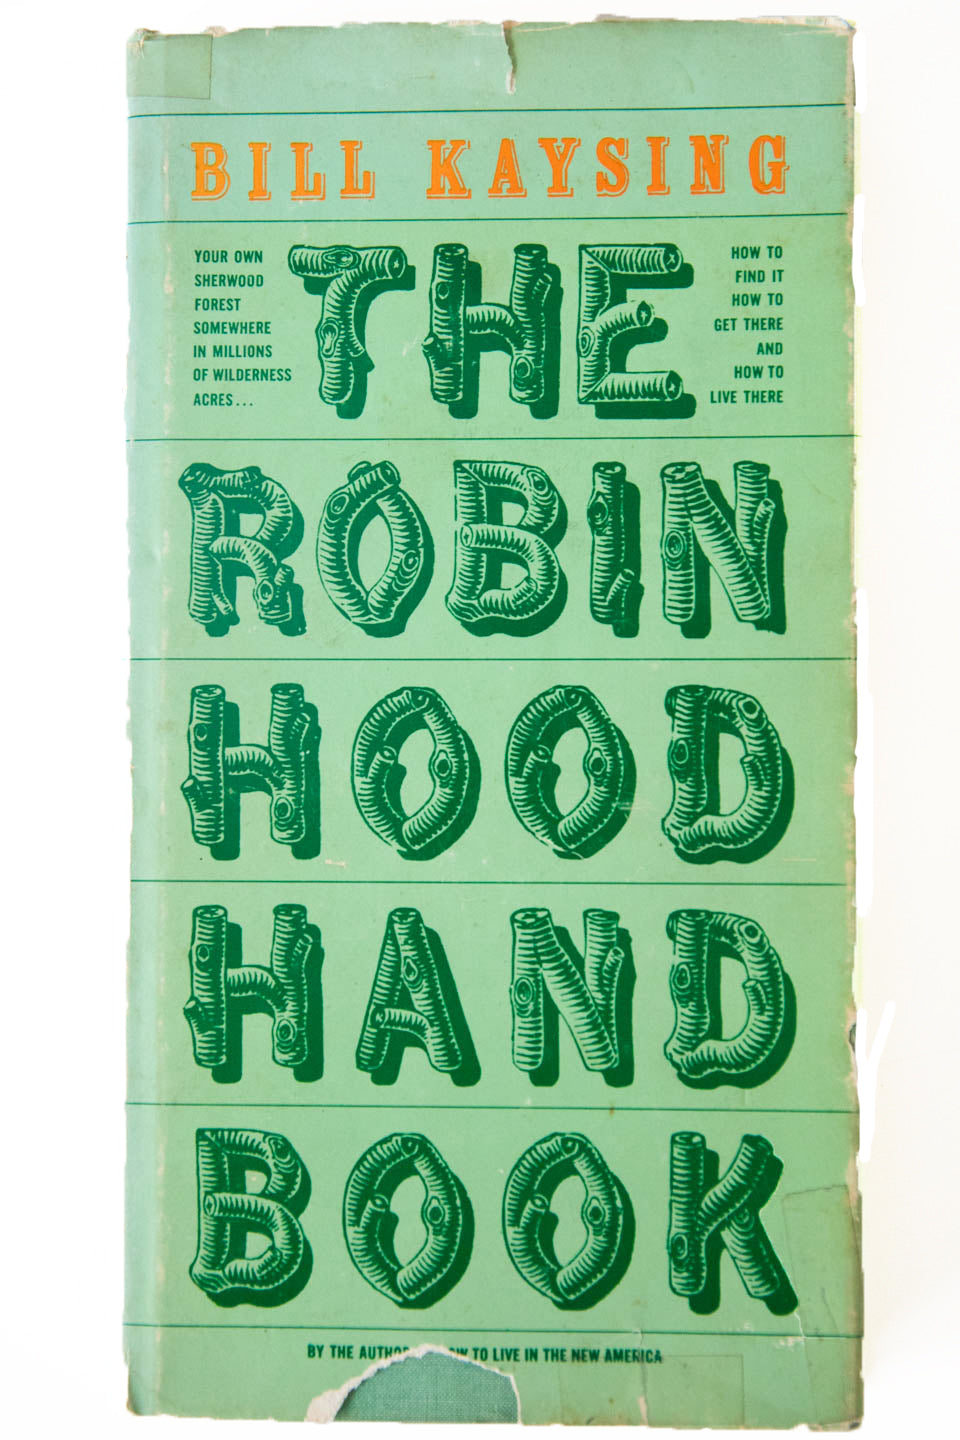 THE ROBIN HOOD HANDBOOK